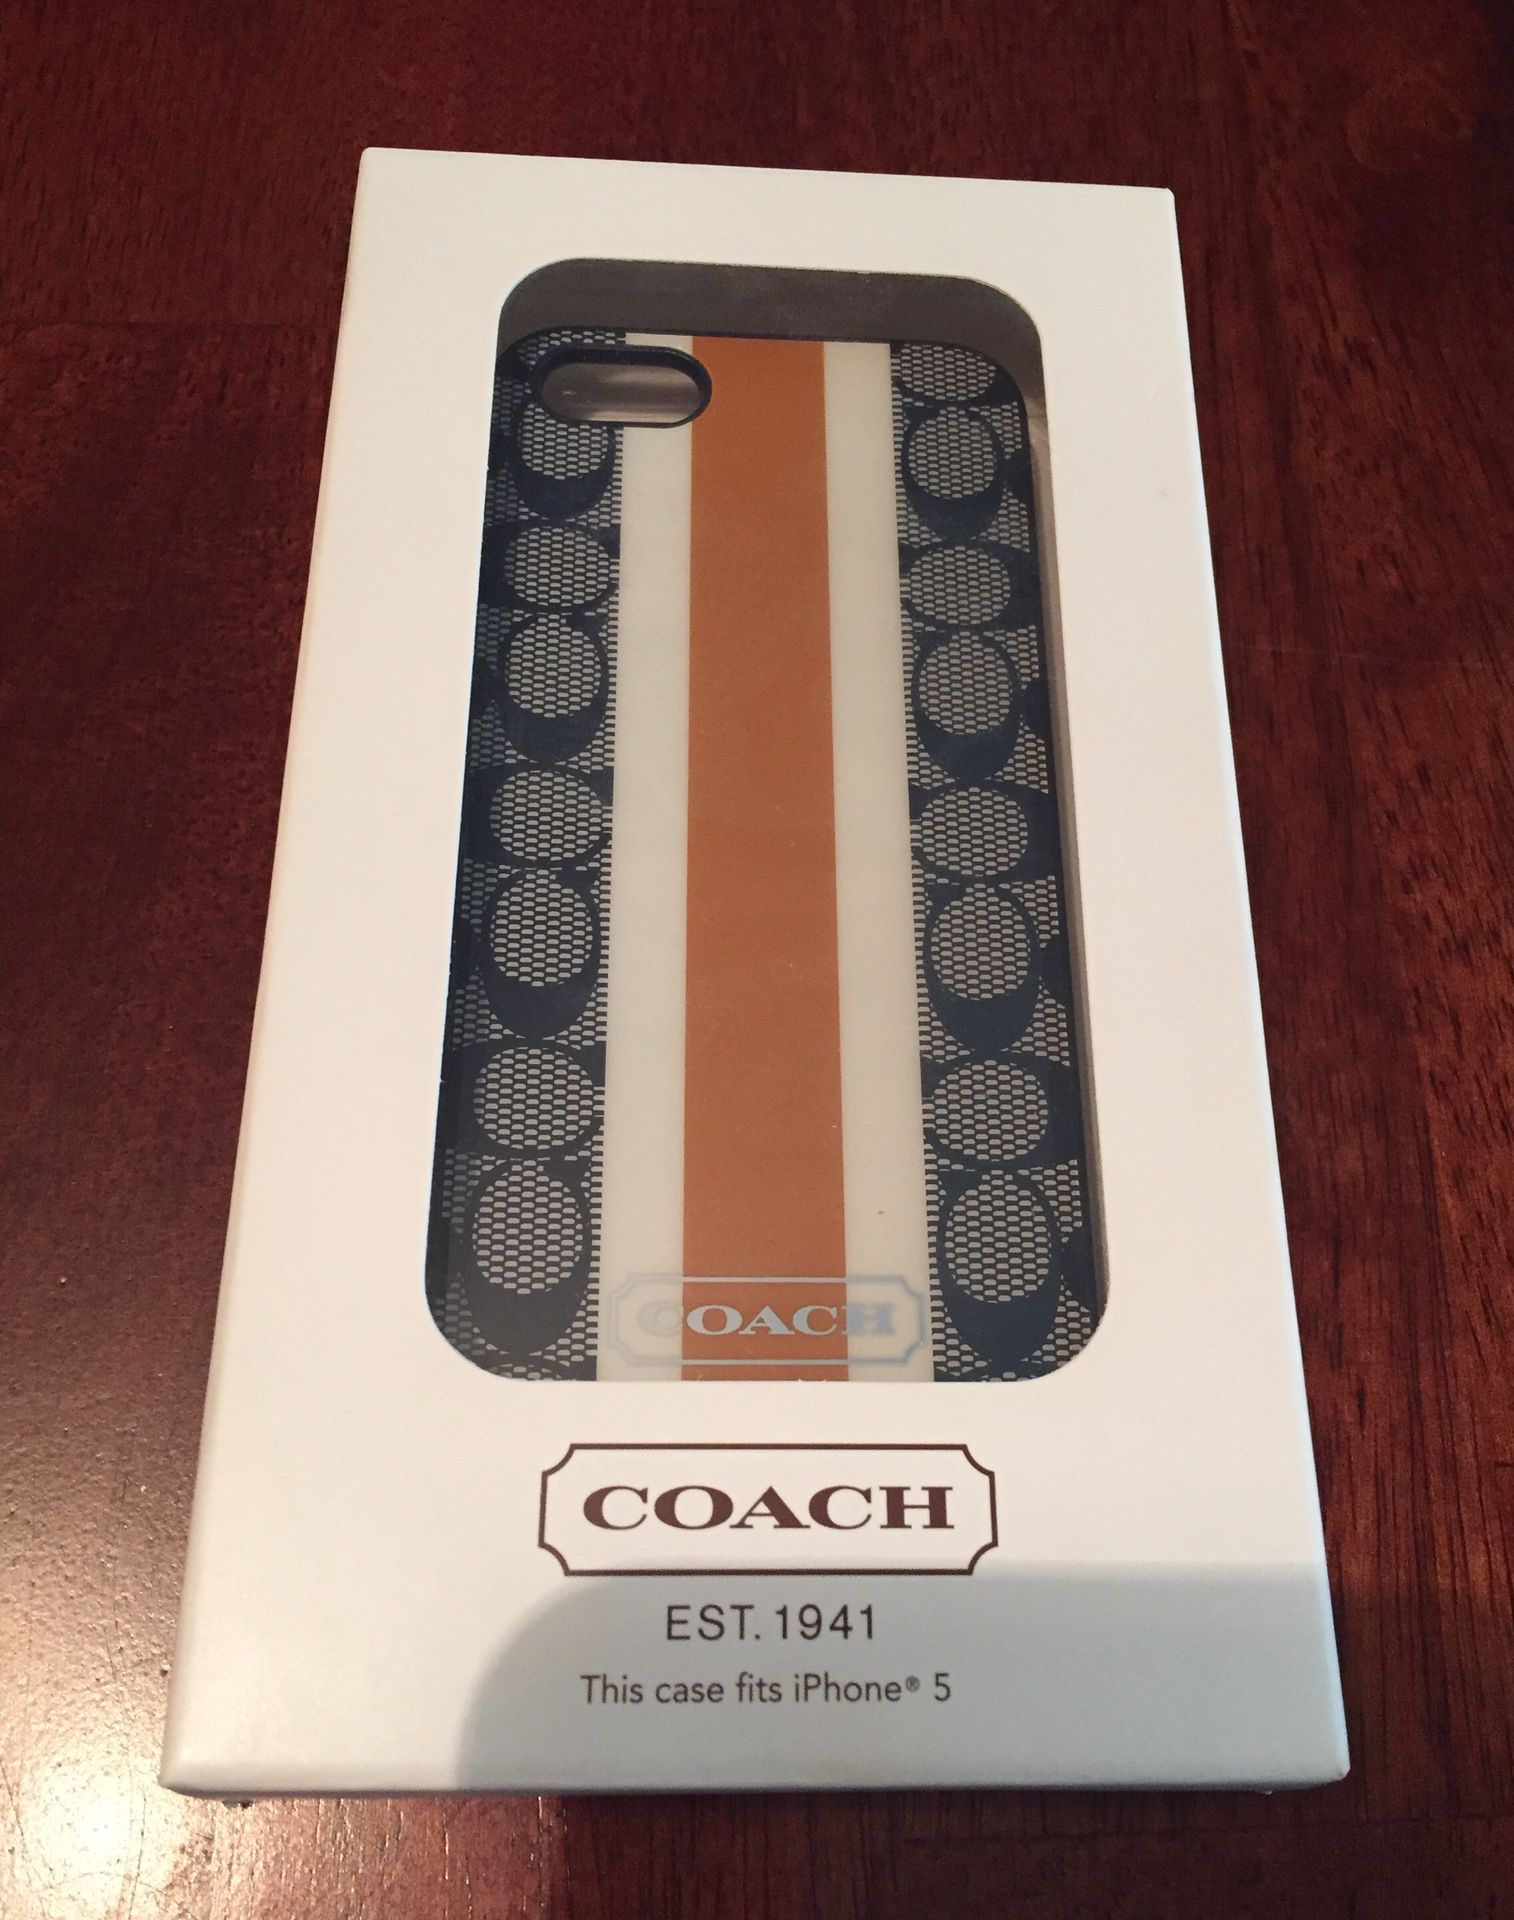 Coach iPhone 5 case